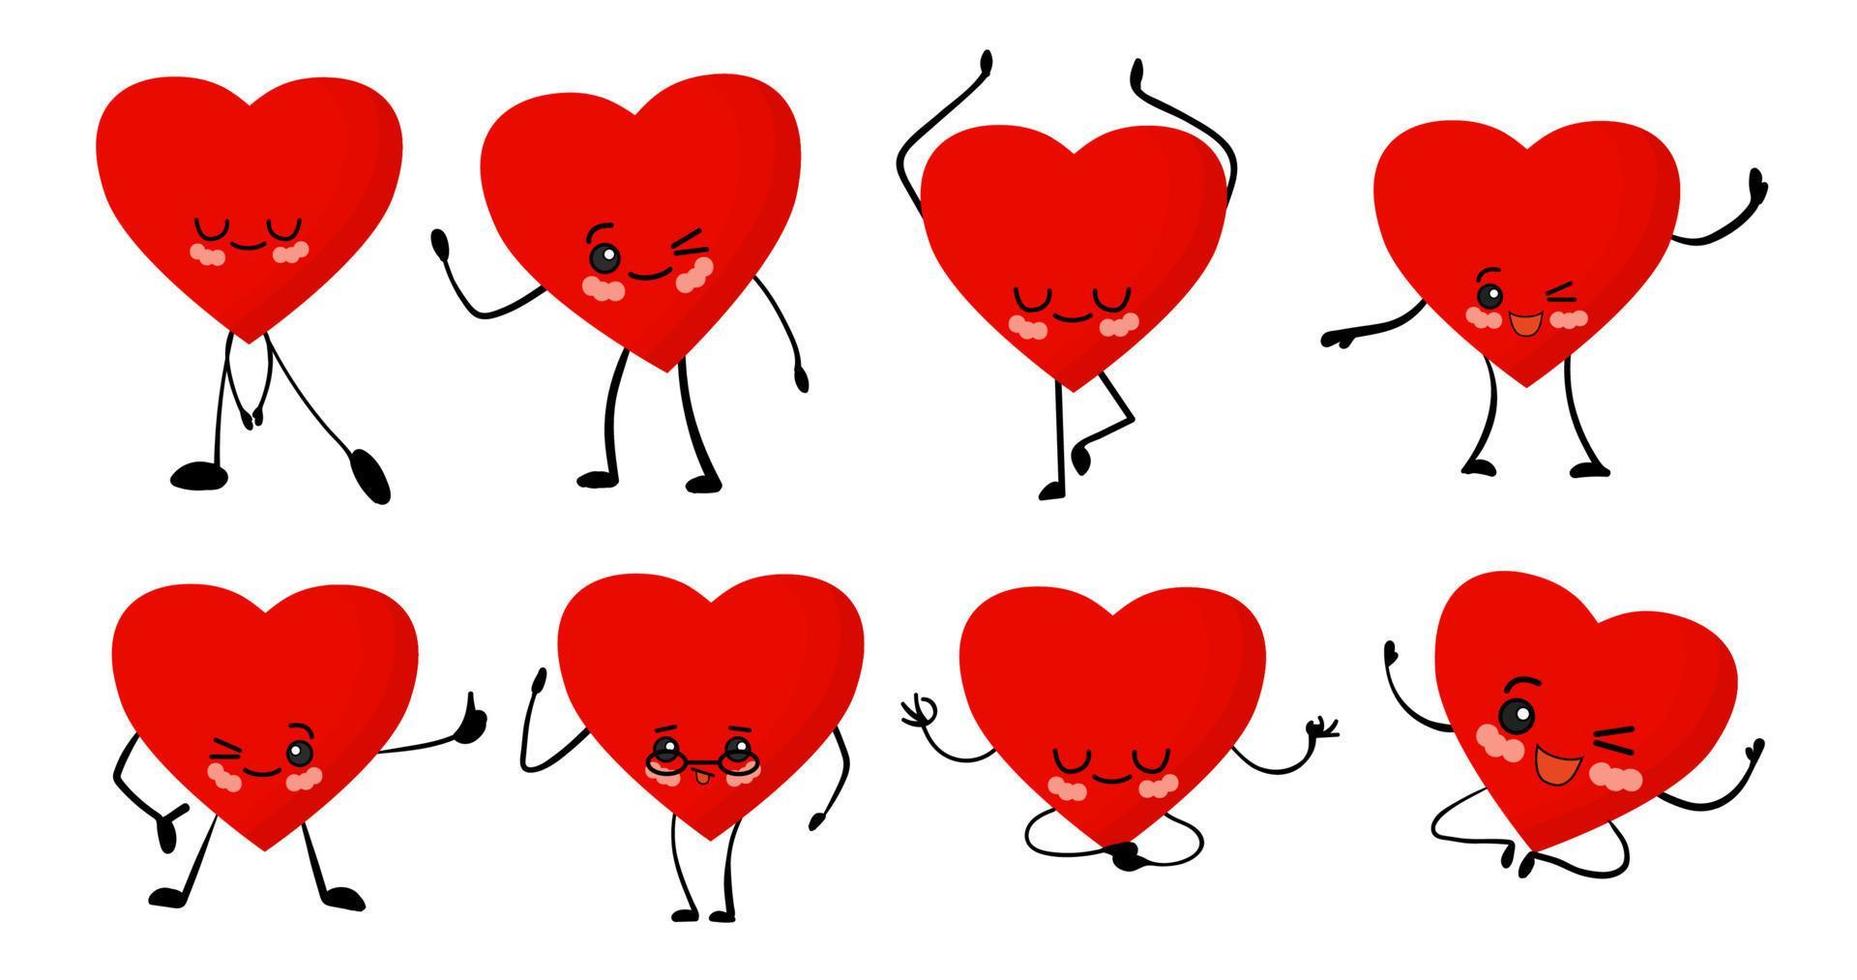 día de San Valentín. conjunto de pegatinas sobre un fondo blanco. lindos corazones de dibujos animados kawaii con ojos, brazos y piernas. carácter alegre del corazón rojo. vector